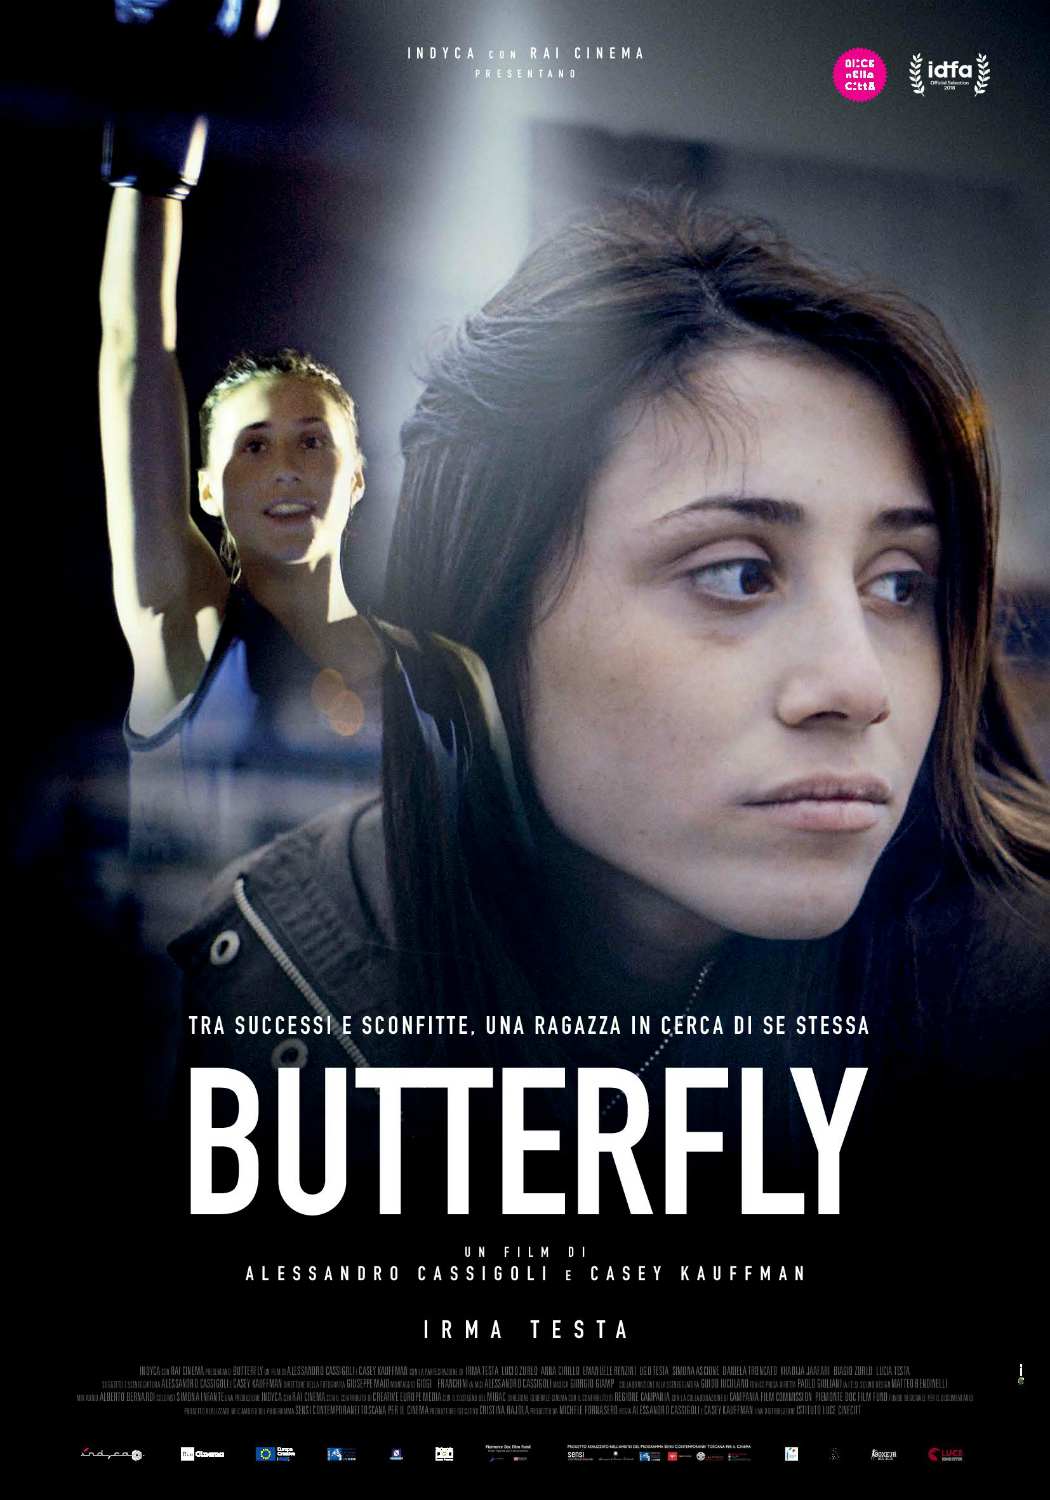 Butterfly, in anteprima toscana, il documentario di Alessandro Cassigoli e Casey Kauffman